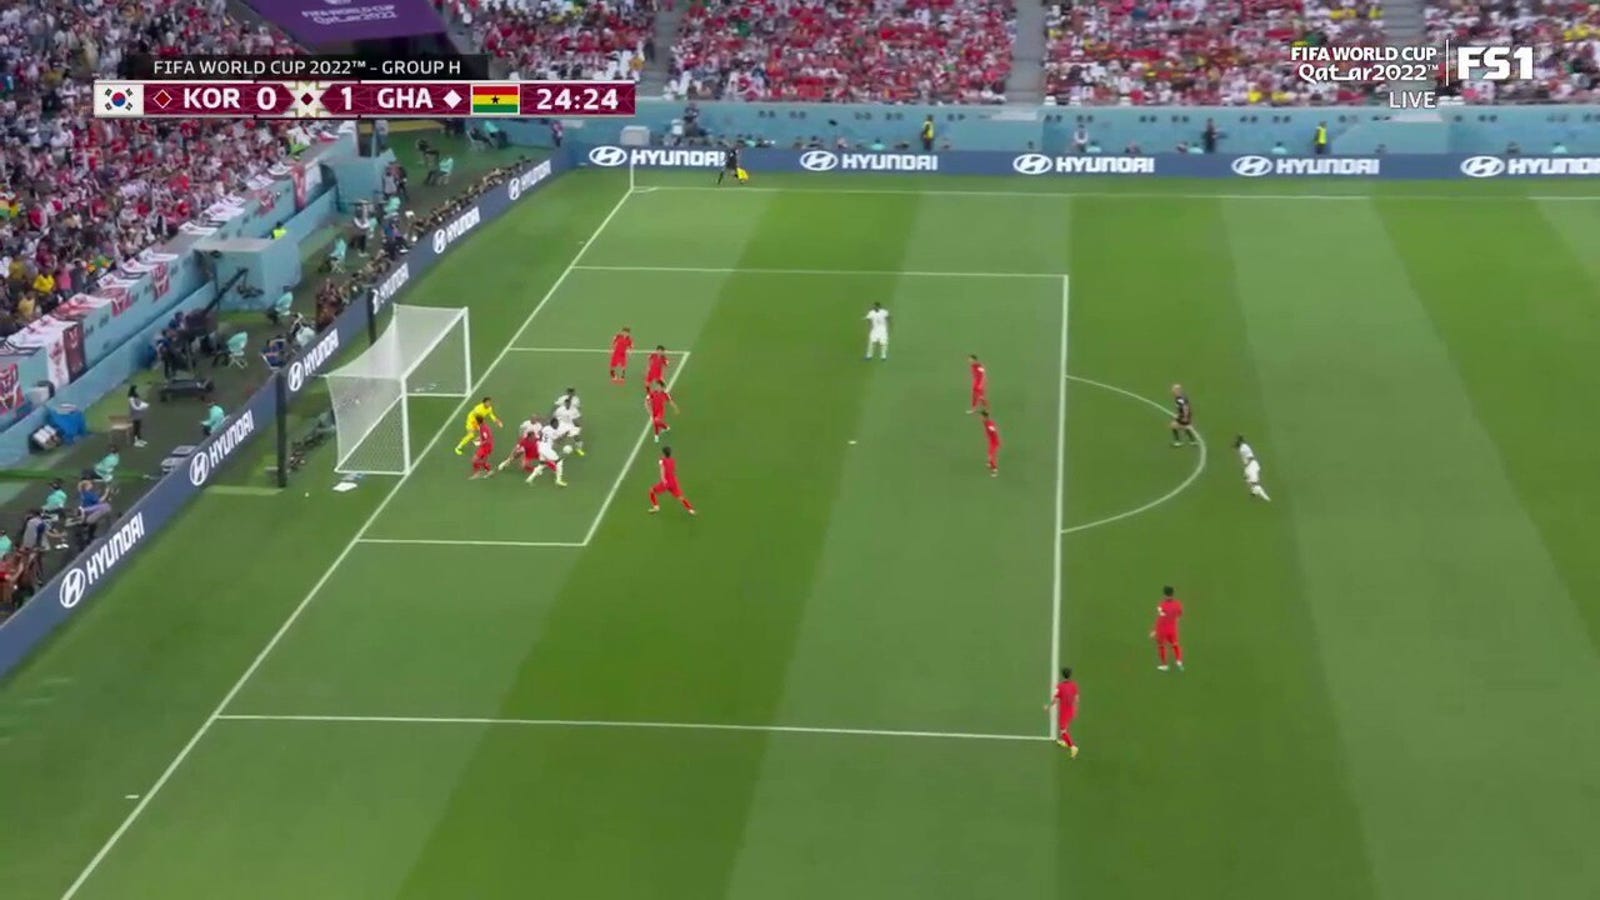 Mohamed Salisu de Ghana anota un gol contra la República de Corea en 24 minutos